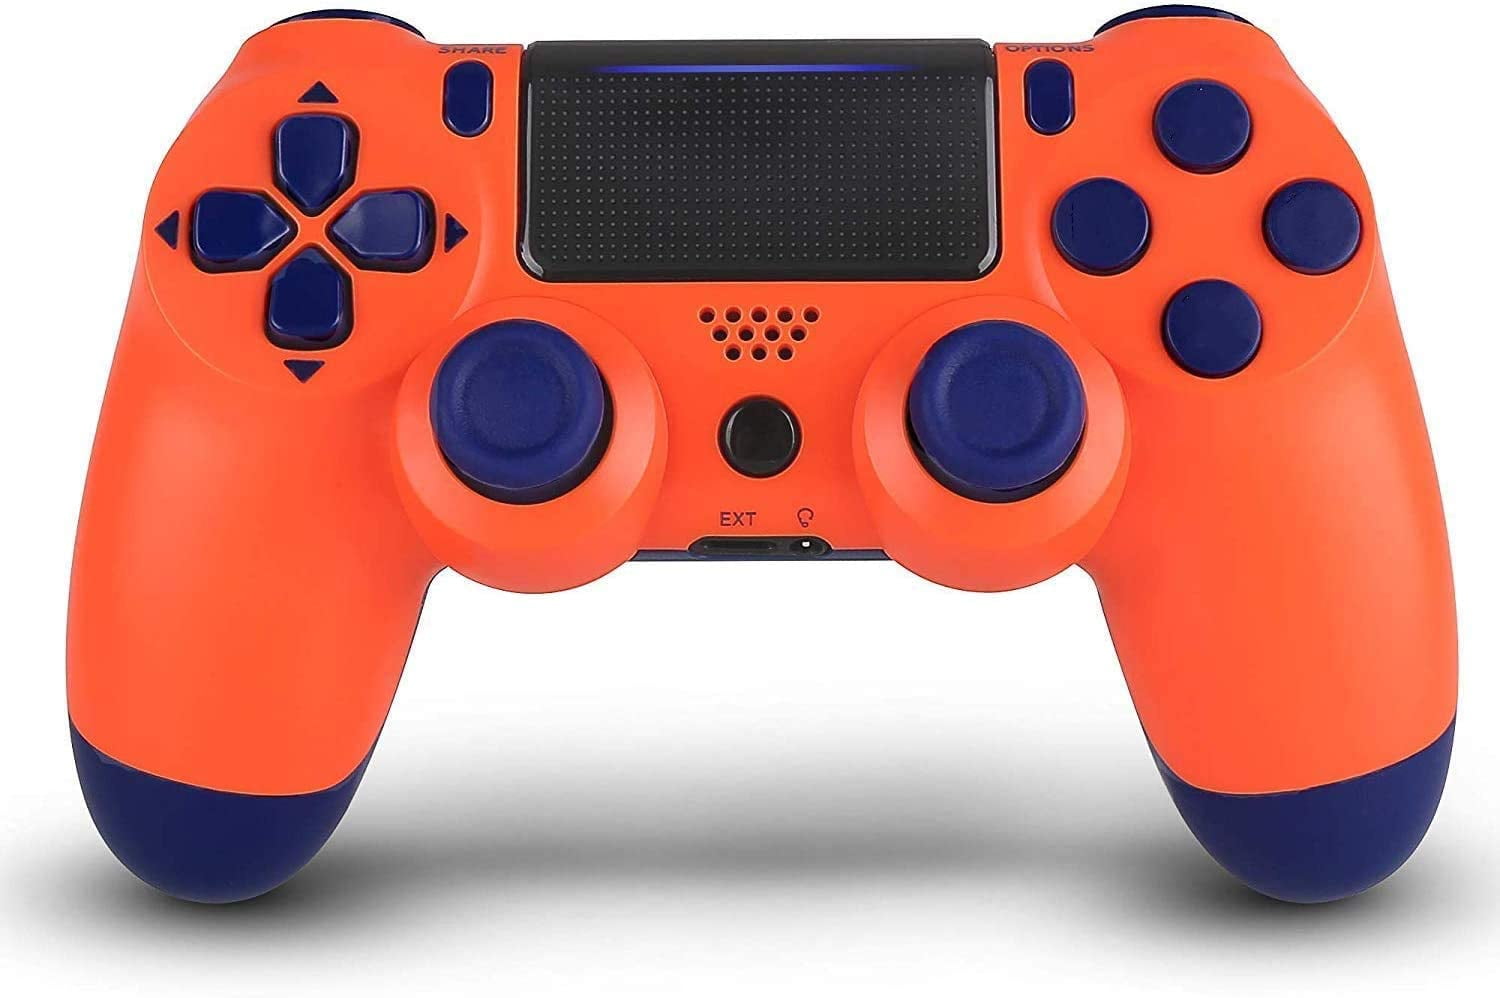 Dualshock 4 Sunset Orange. Джойстик ps4 оранжевый. 2.4G Wireless Controller Gamepad. Стоит 5 PLAYSTATION оранжевый.